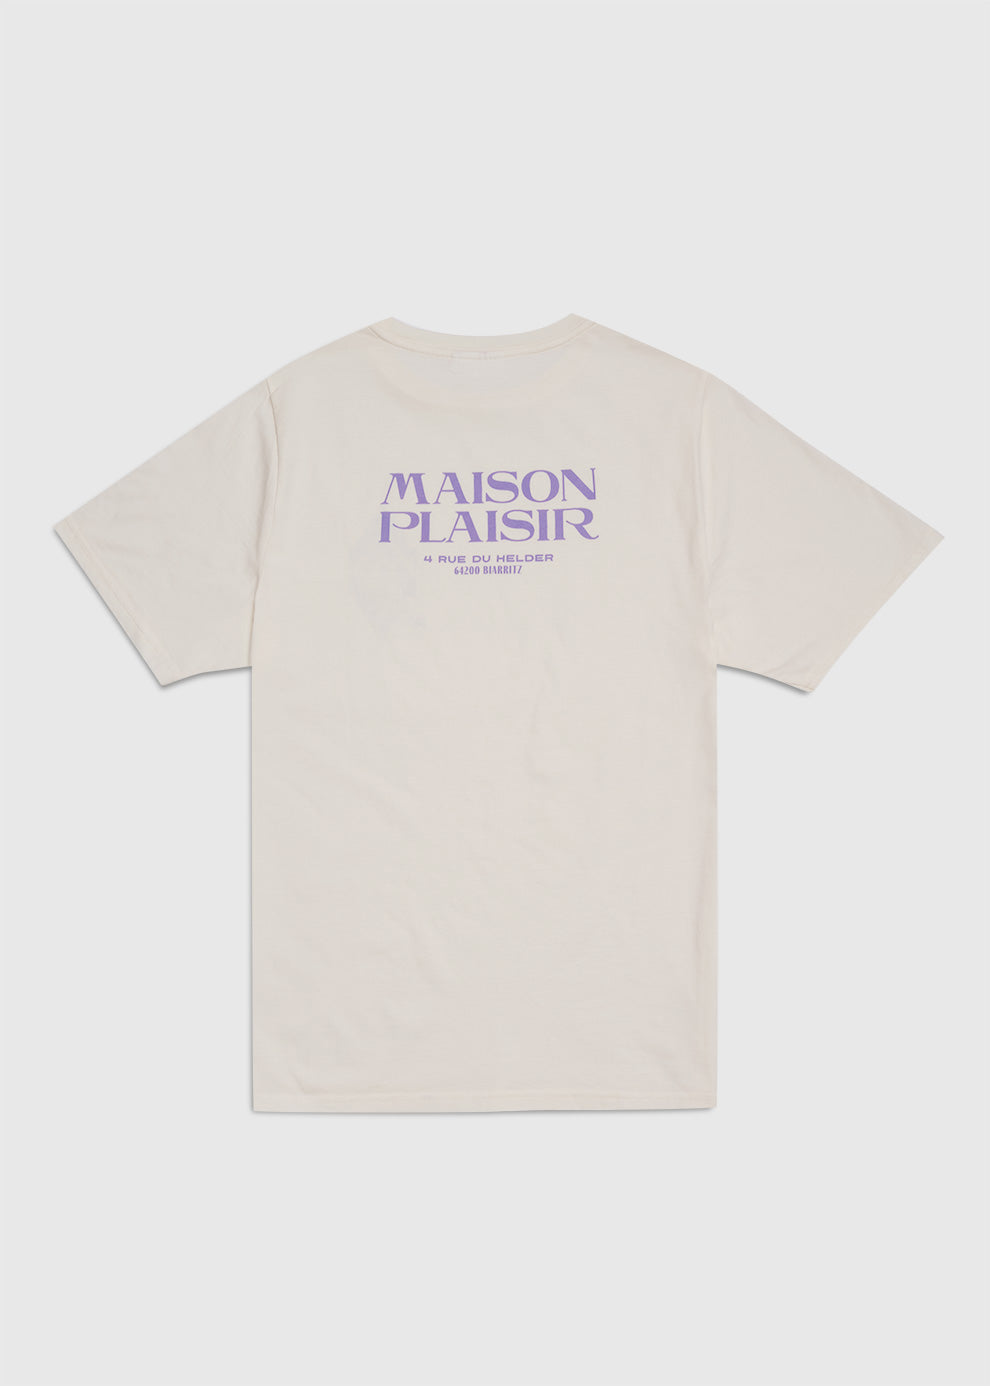 T-shirt Maison plaisir Beige/violet